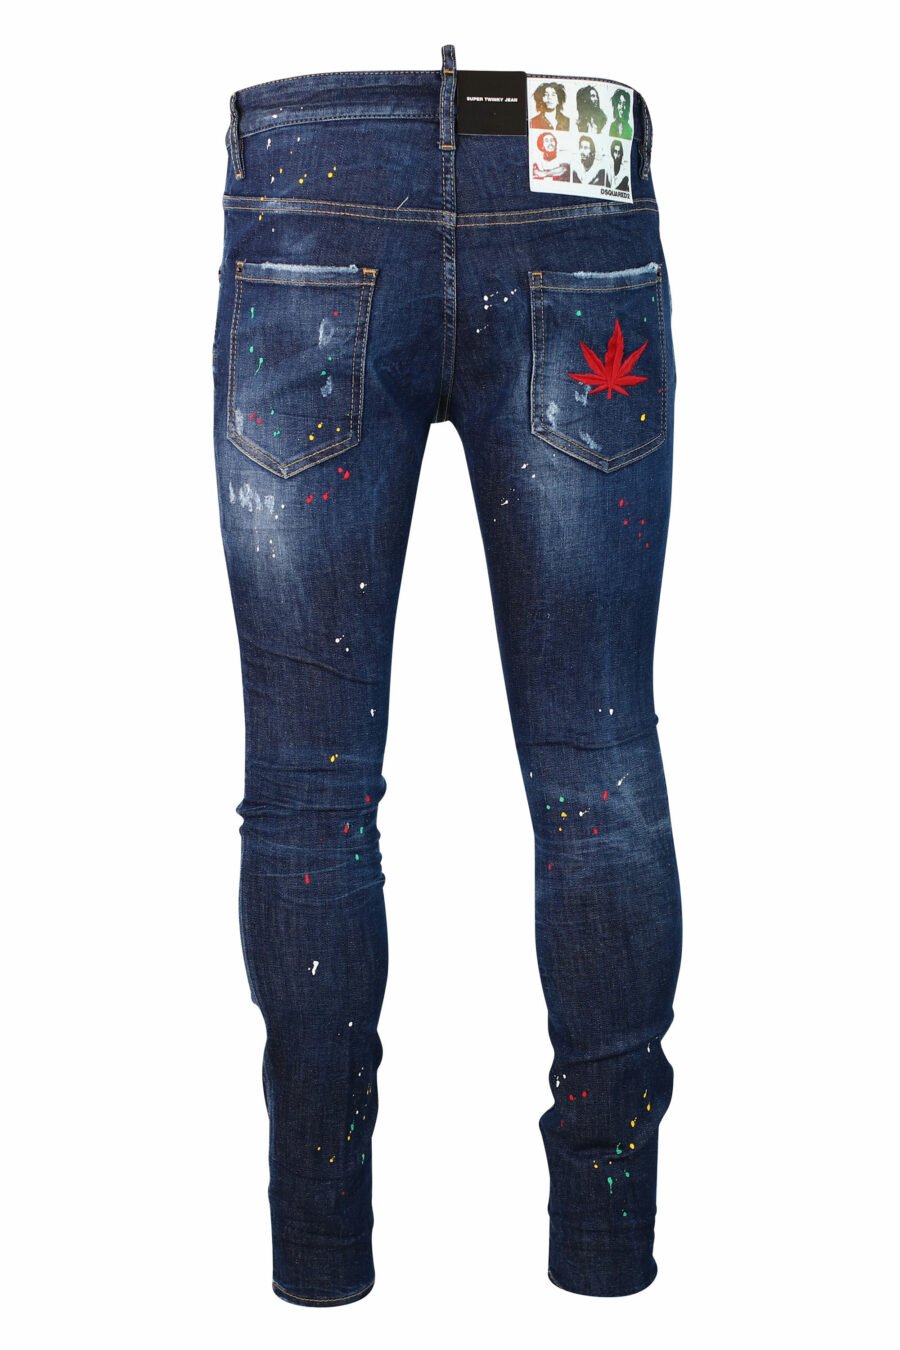 Blaue Jeans "super twinky jean" getragen "bob marley" - IMG 9924 1